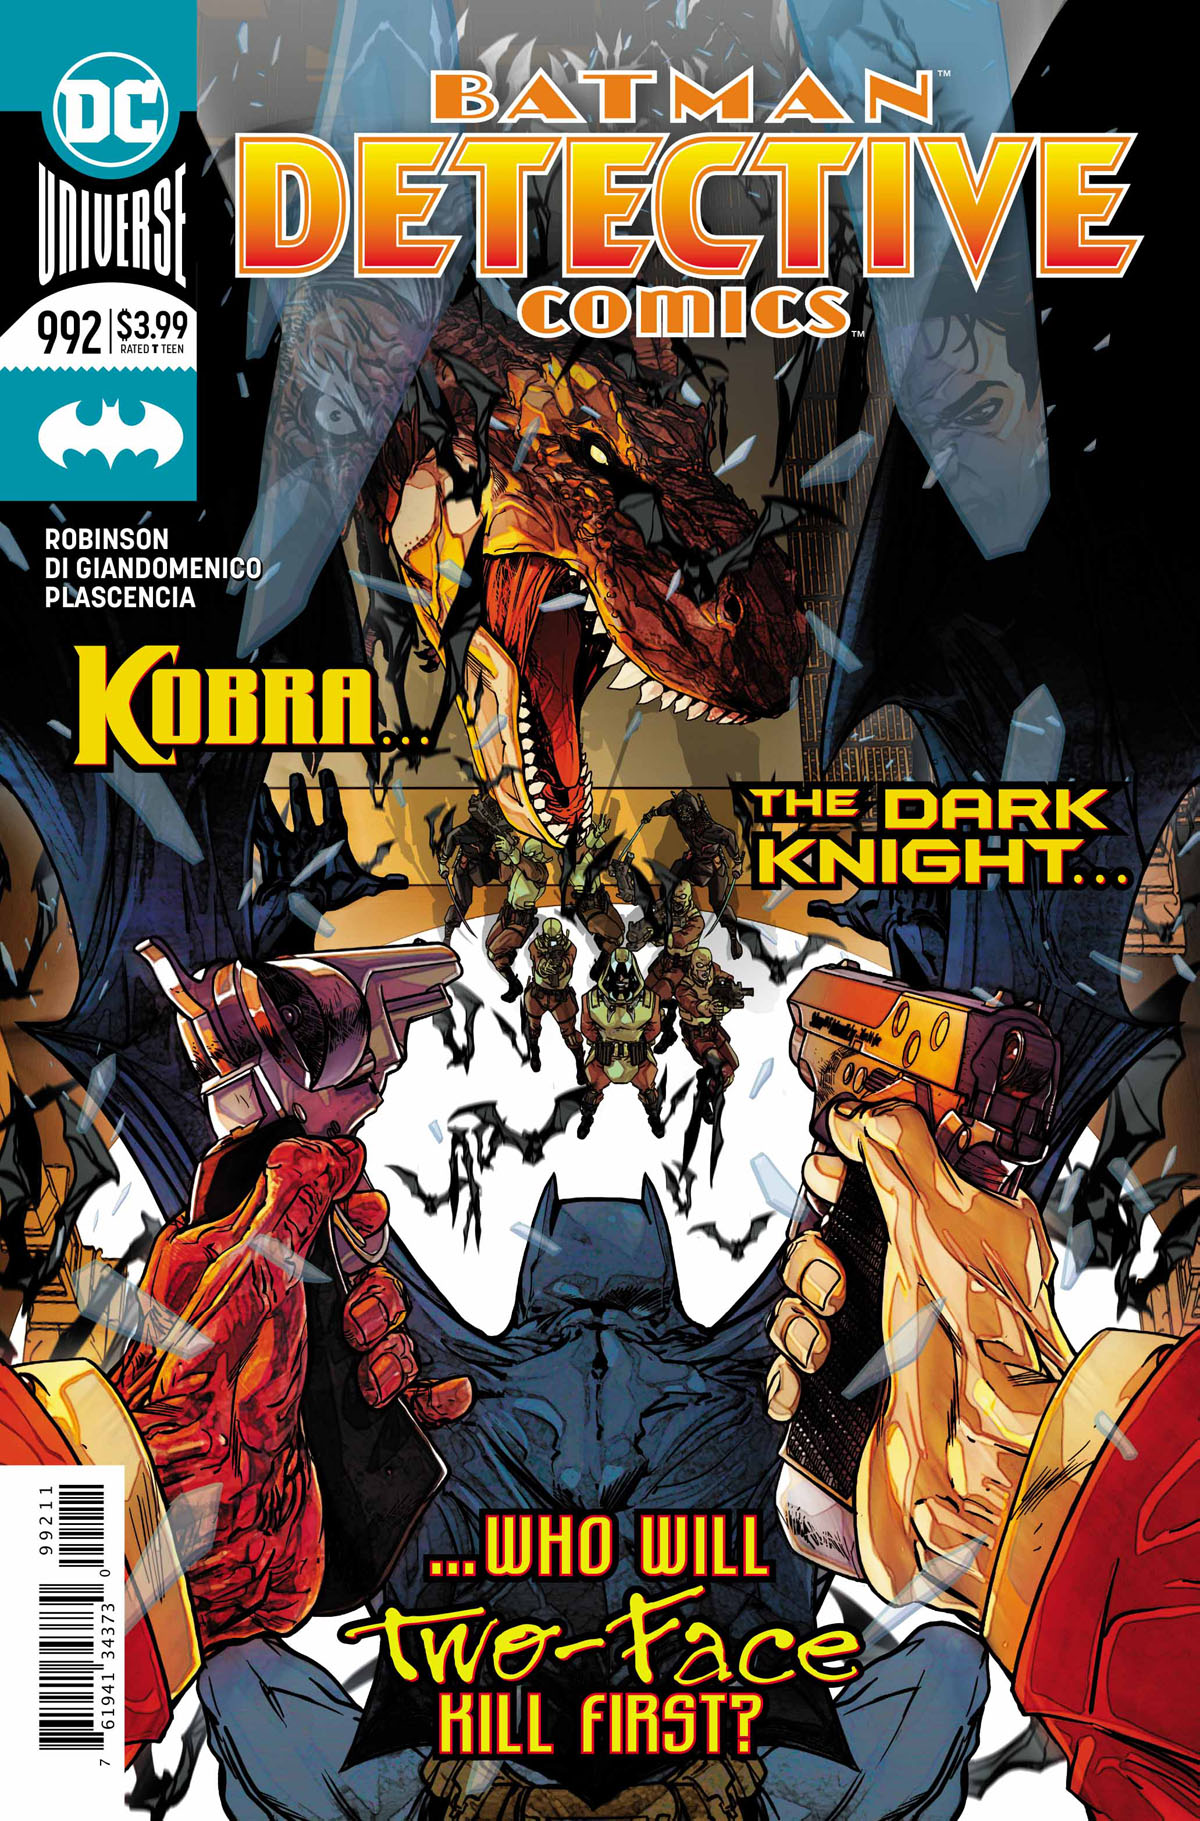 Detective Comics #992 cover